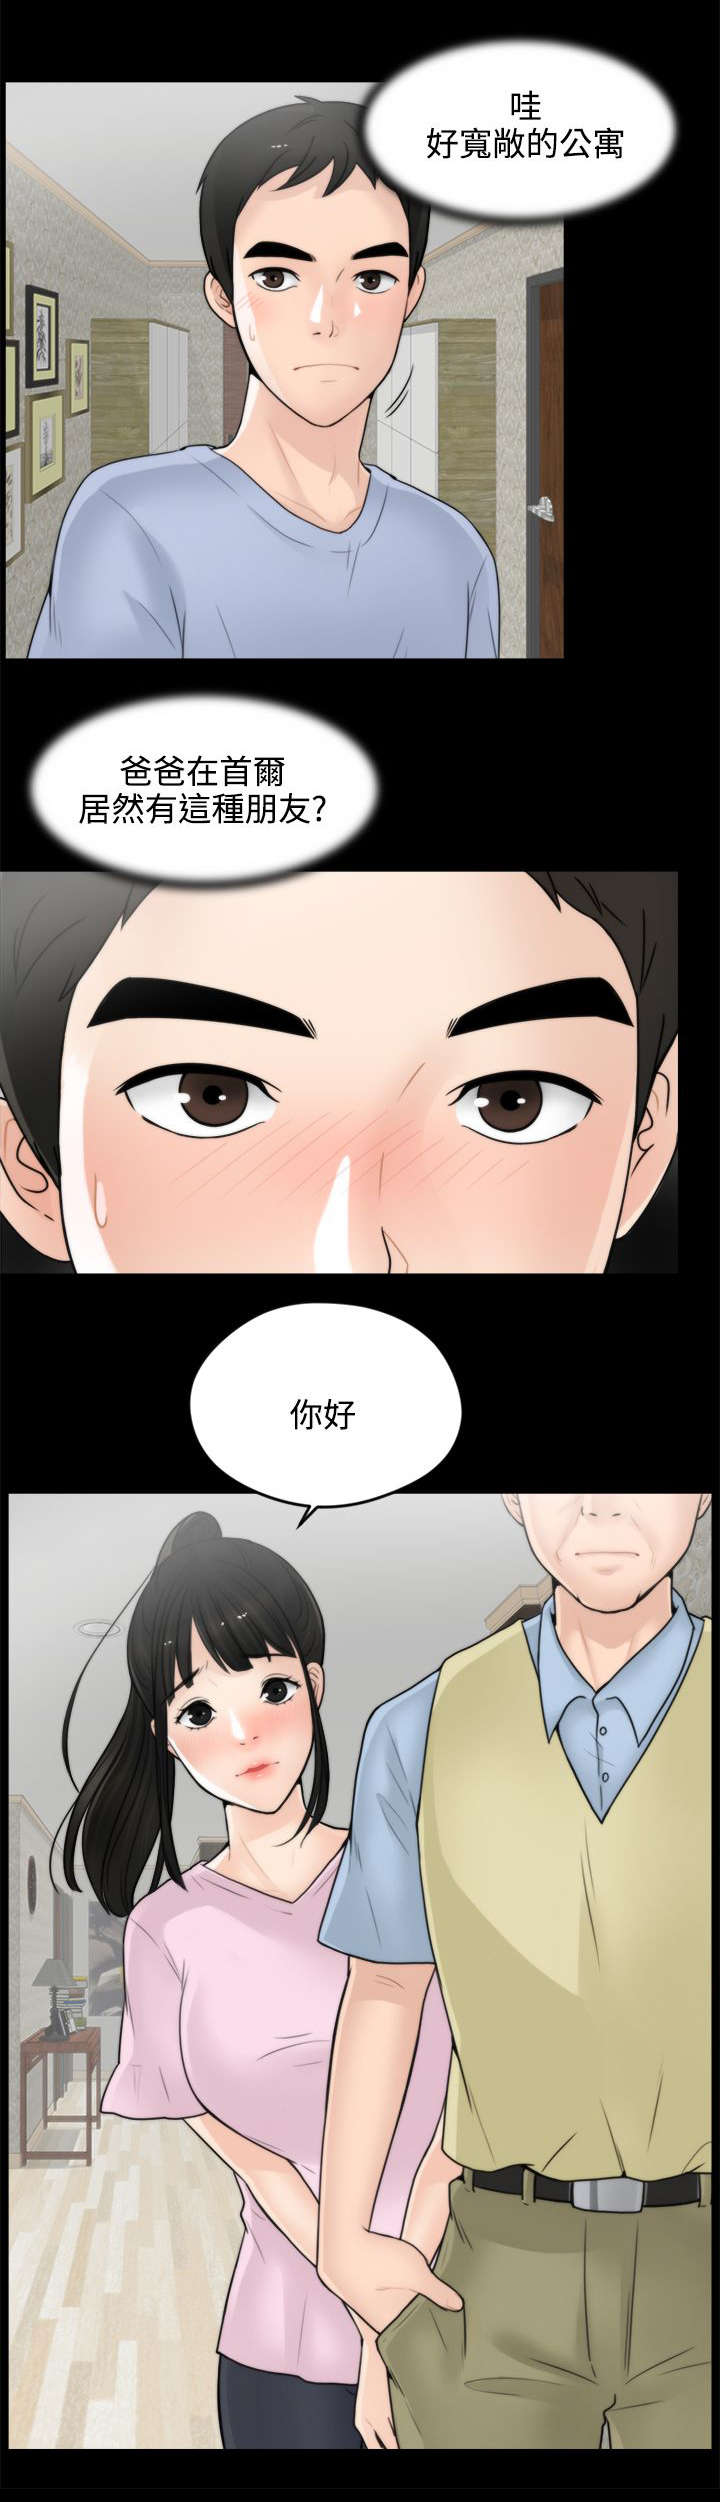 《偷偷爱》— 韩国漫画 — 全文免费在线阅读